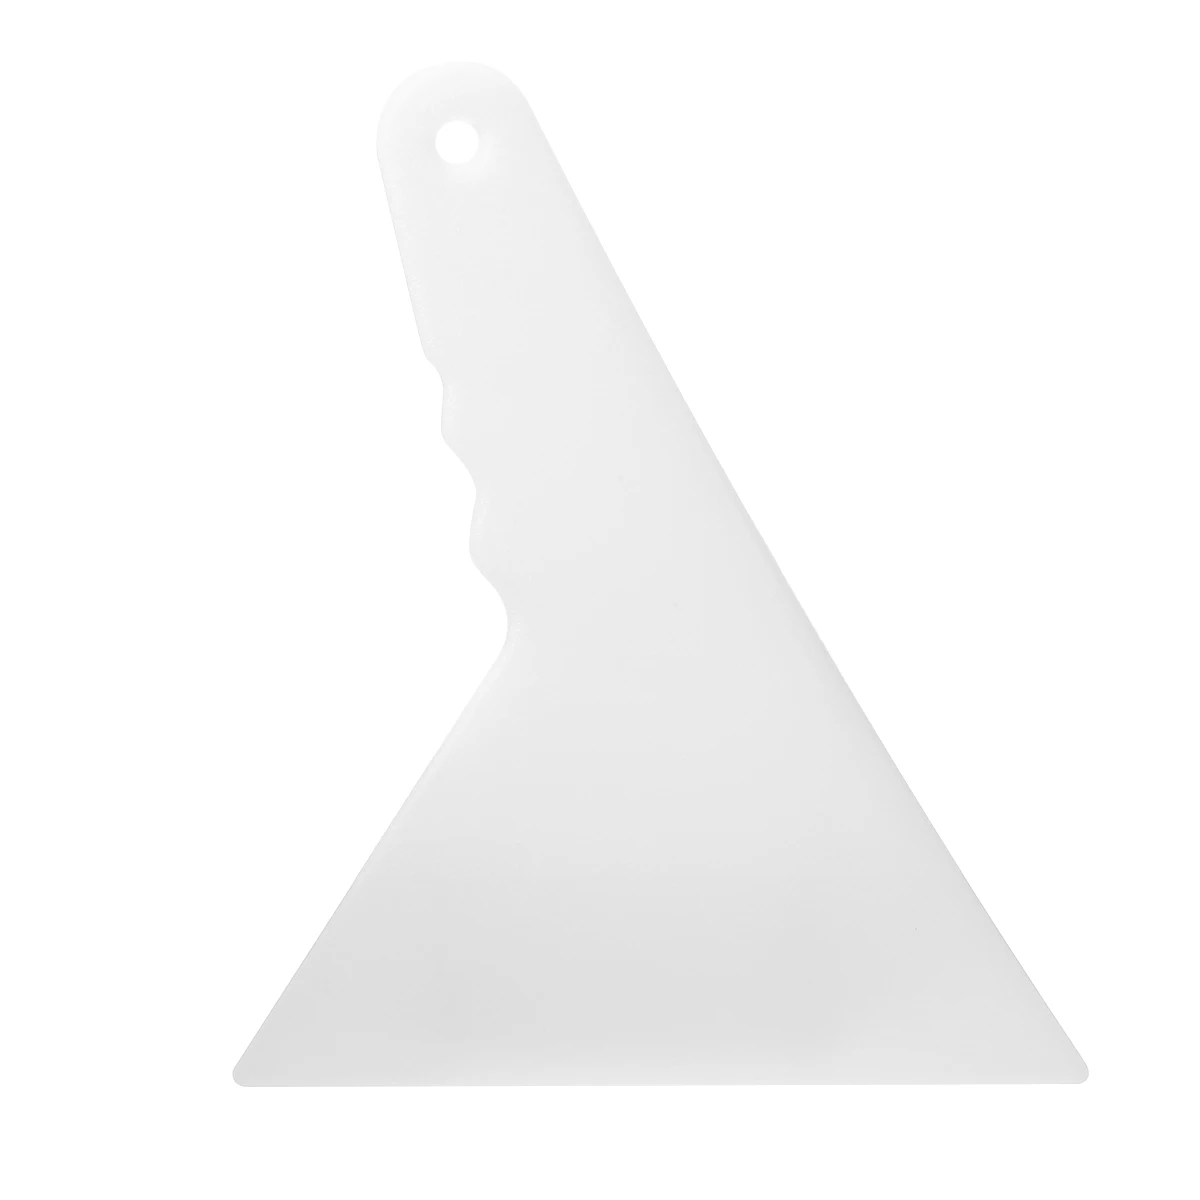 2 шт./компл. алмазов картина корректор для рисования швейная фурнитура коррекции прочные домашние крест стежка рукоделия однотонные пресс-форм